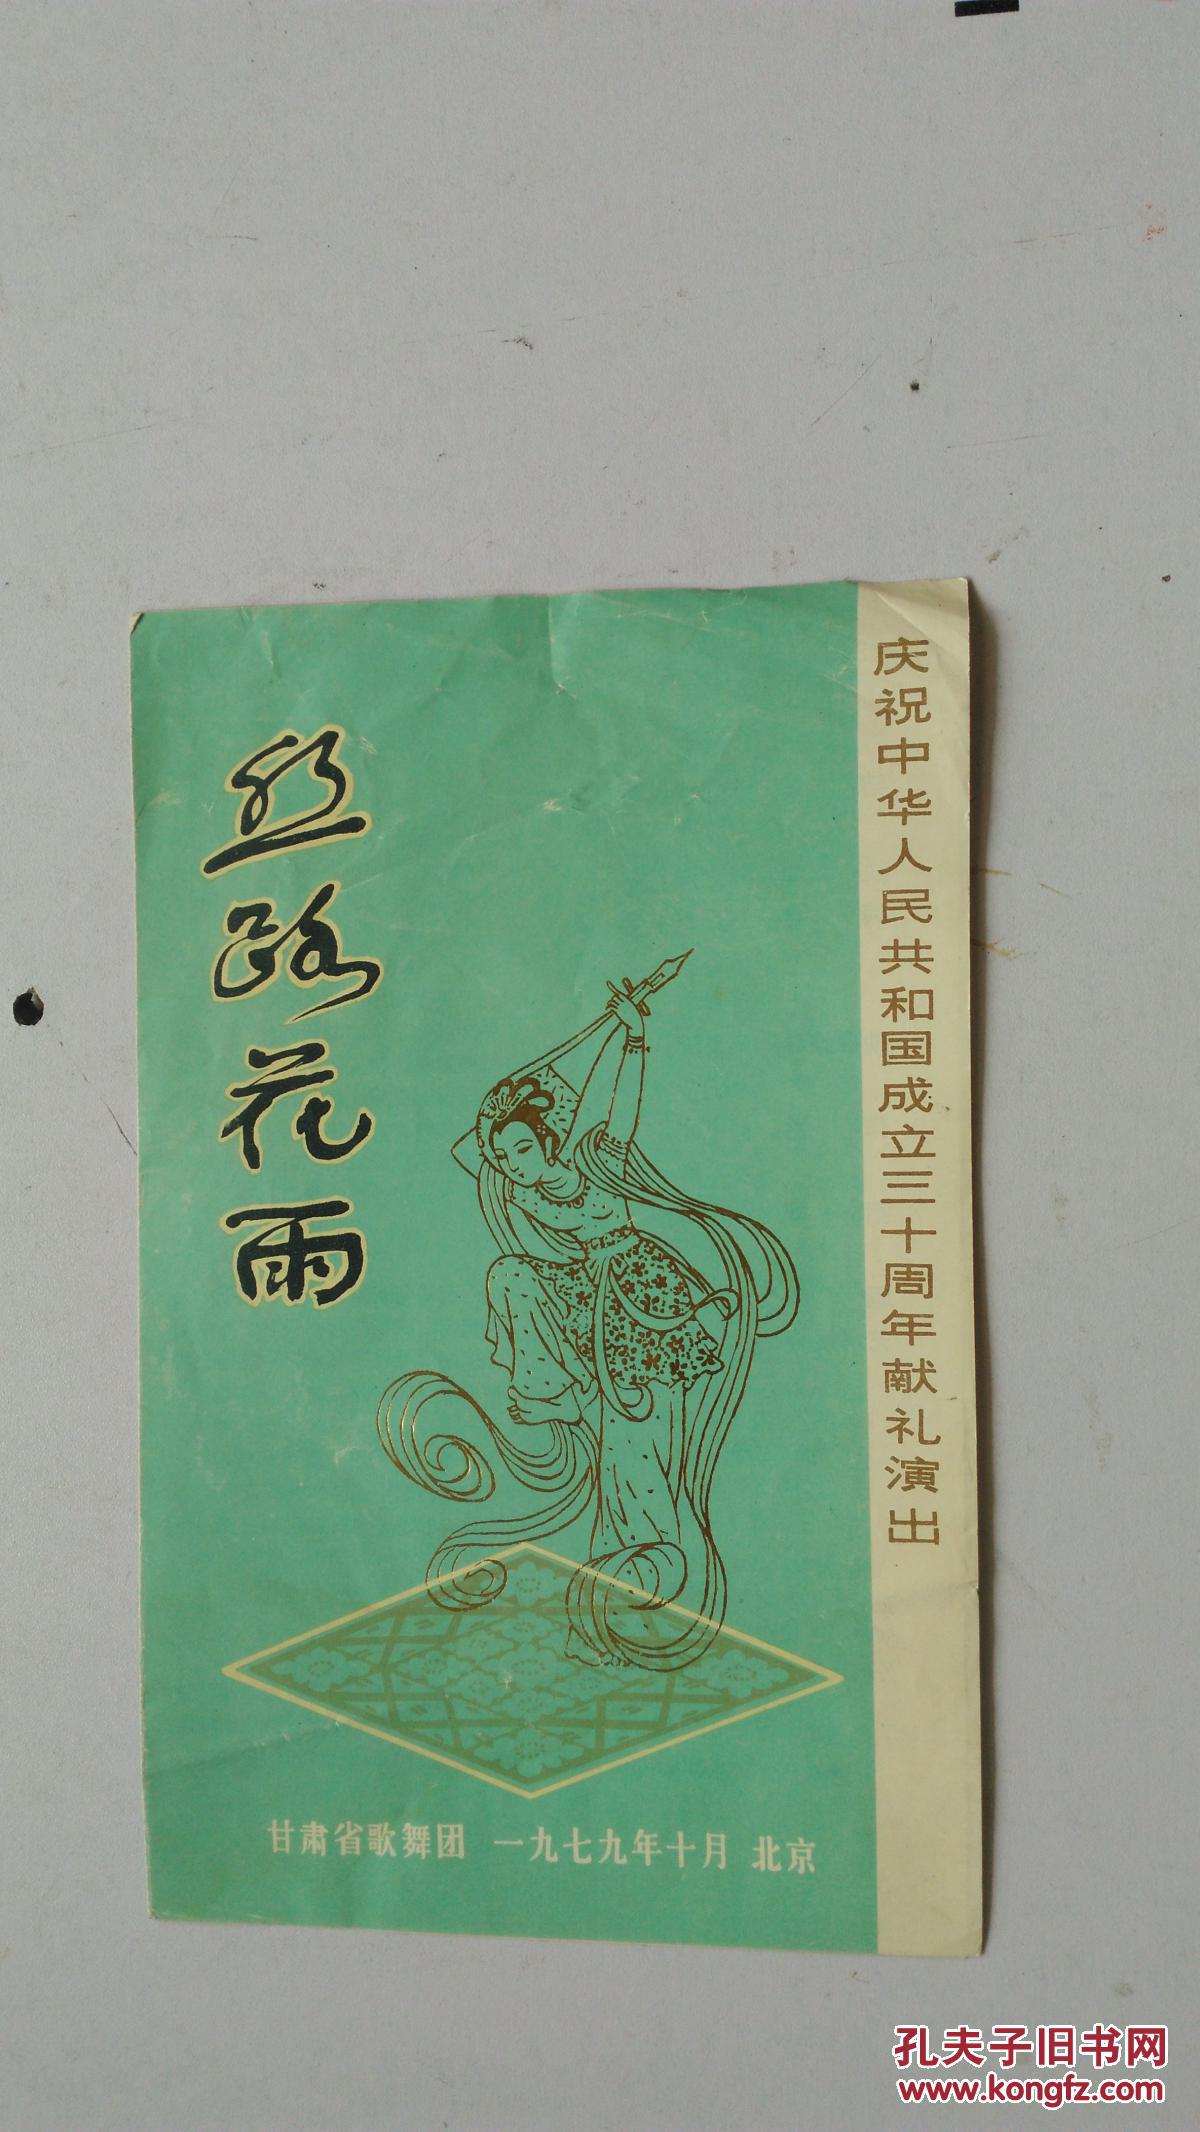 节目单  丝路花雨 庆祝中华人民共和国成立三十周年献礼演出节目单 1979年10月北京 甘肃省歌舞团